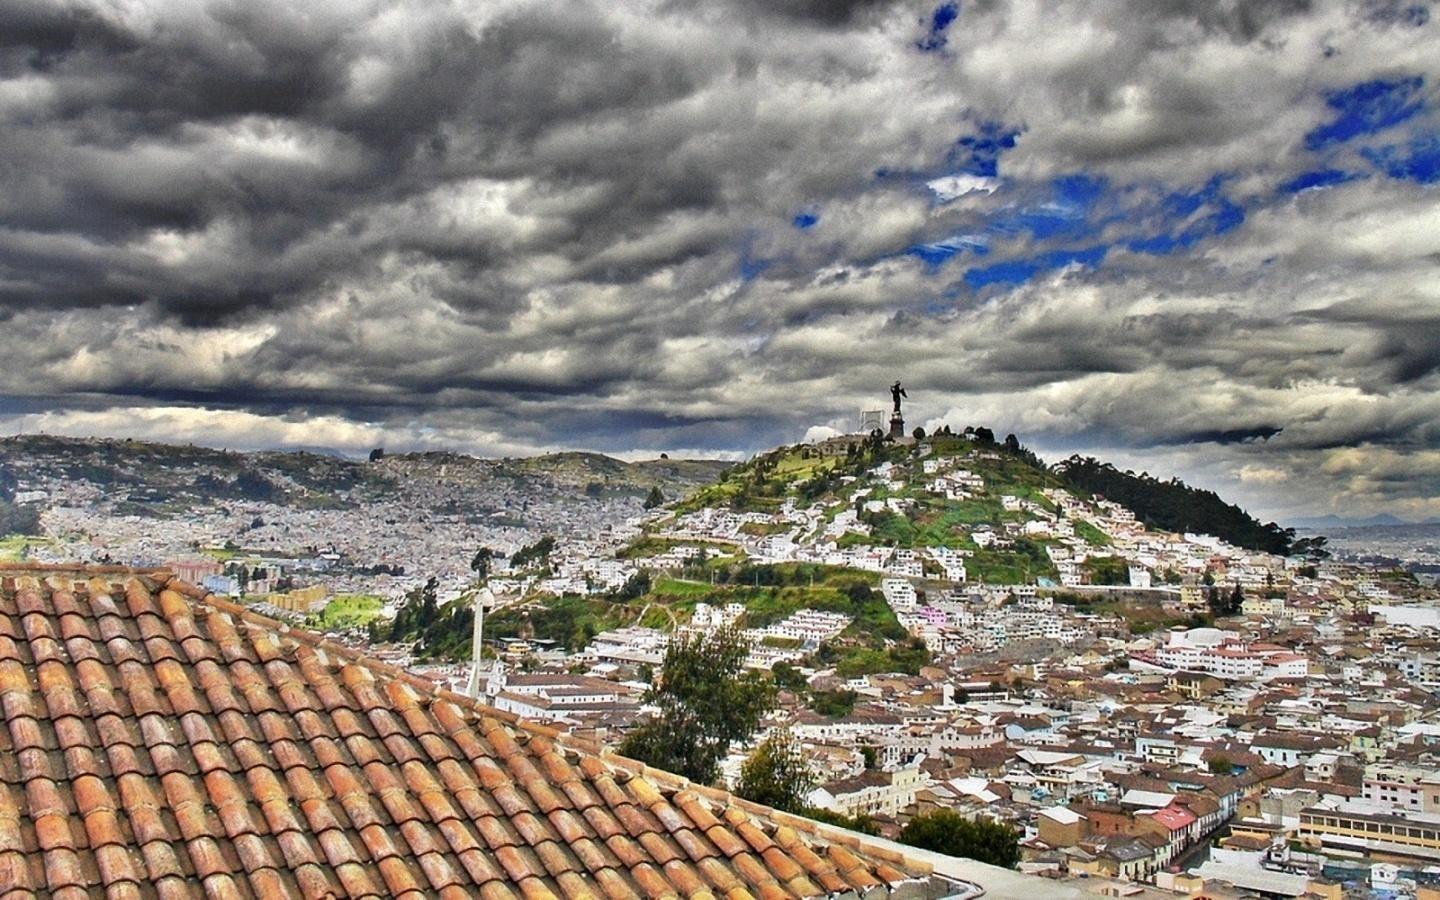 Quito 1440x900 Wallpaper, Quito 1440x900 Wallpaper & Picture Free